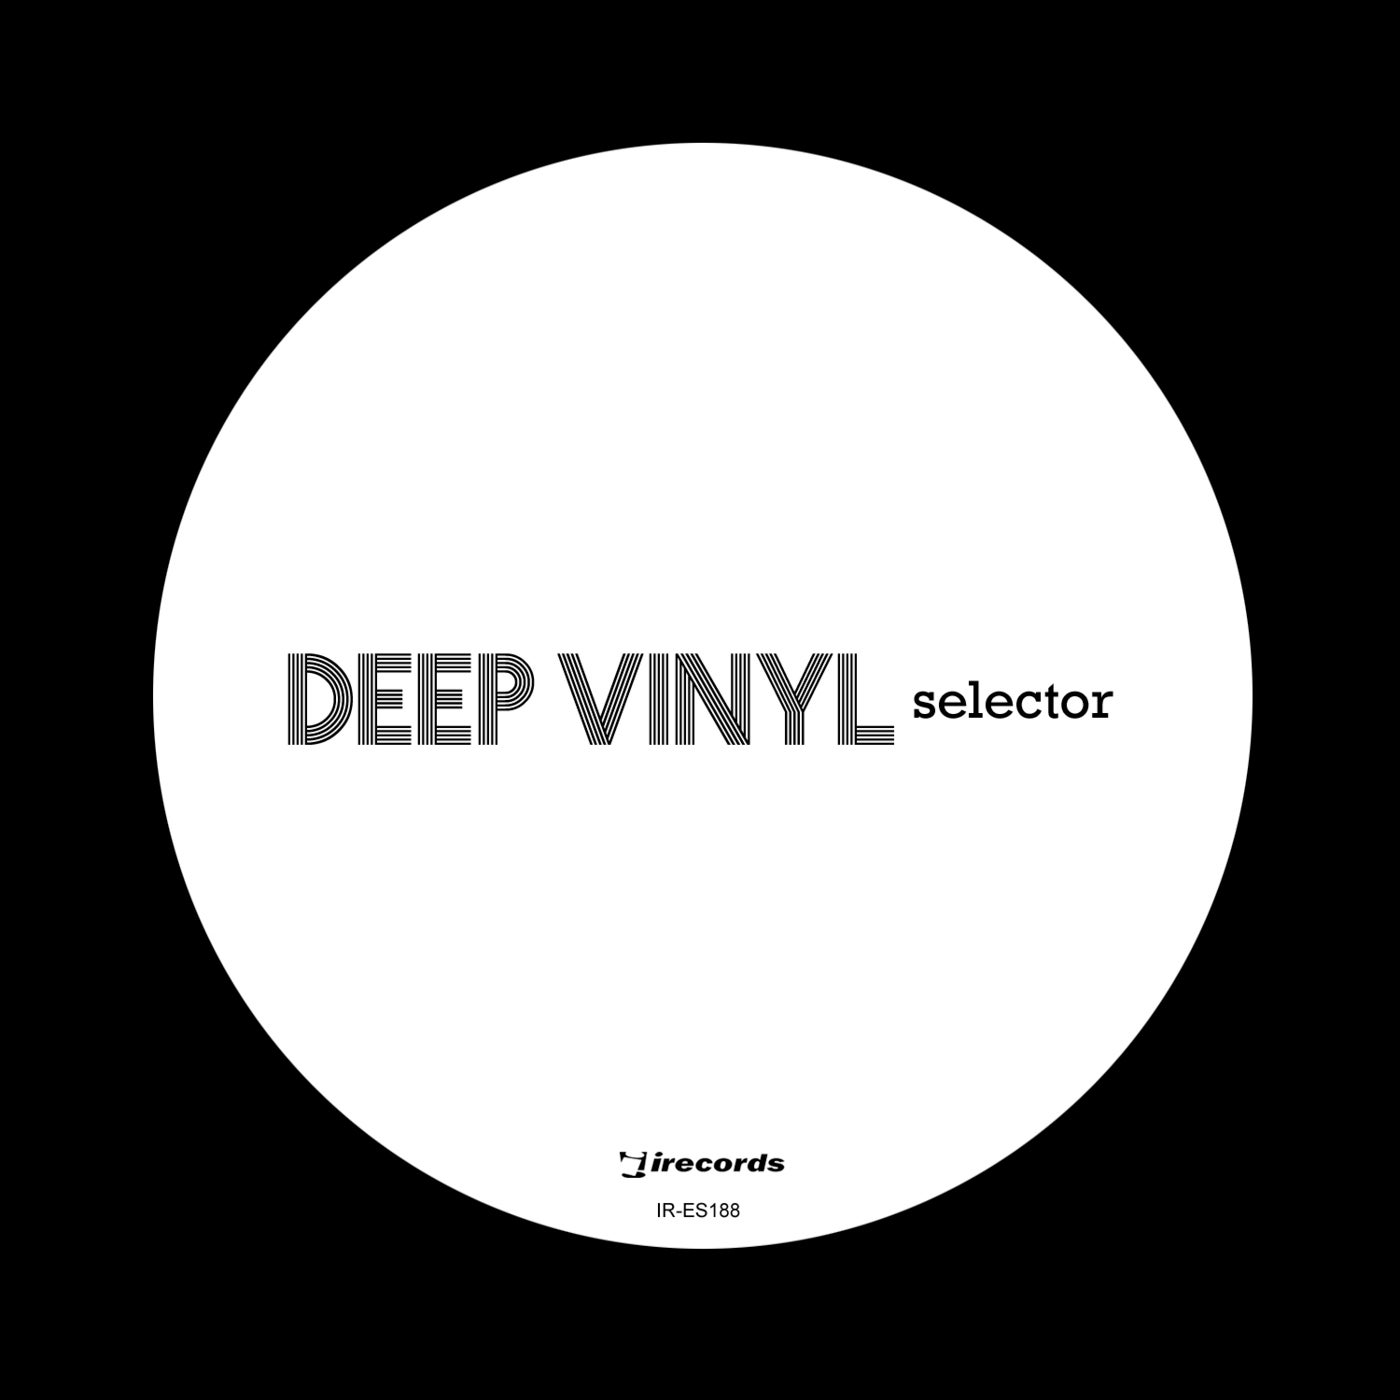 Deep Vinyl Selector Vol. 1